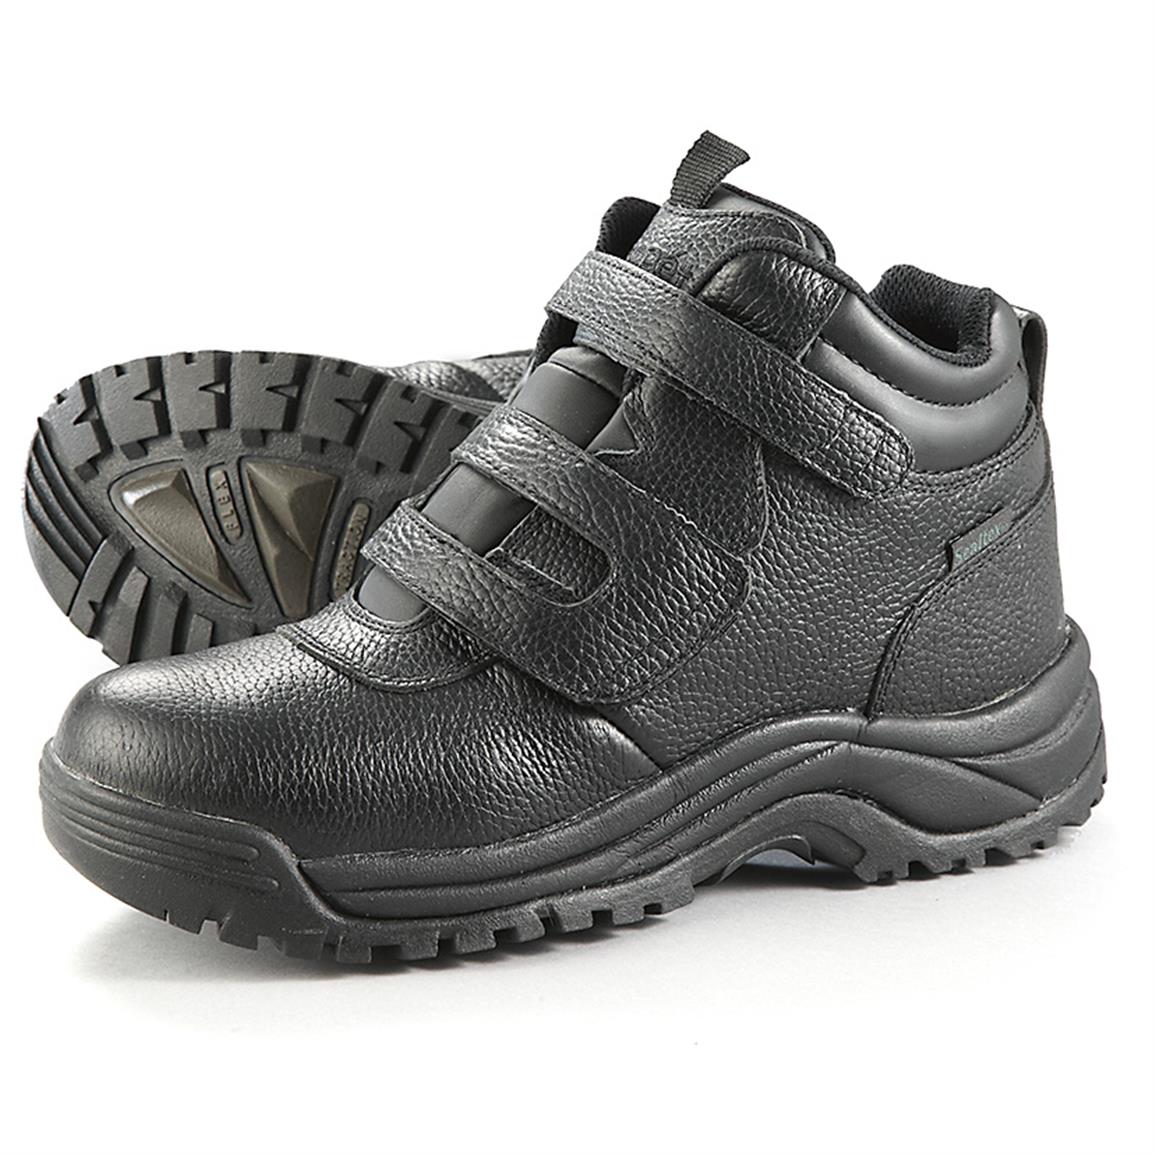 velcro hiking boots online shop 0959d 7c729